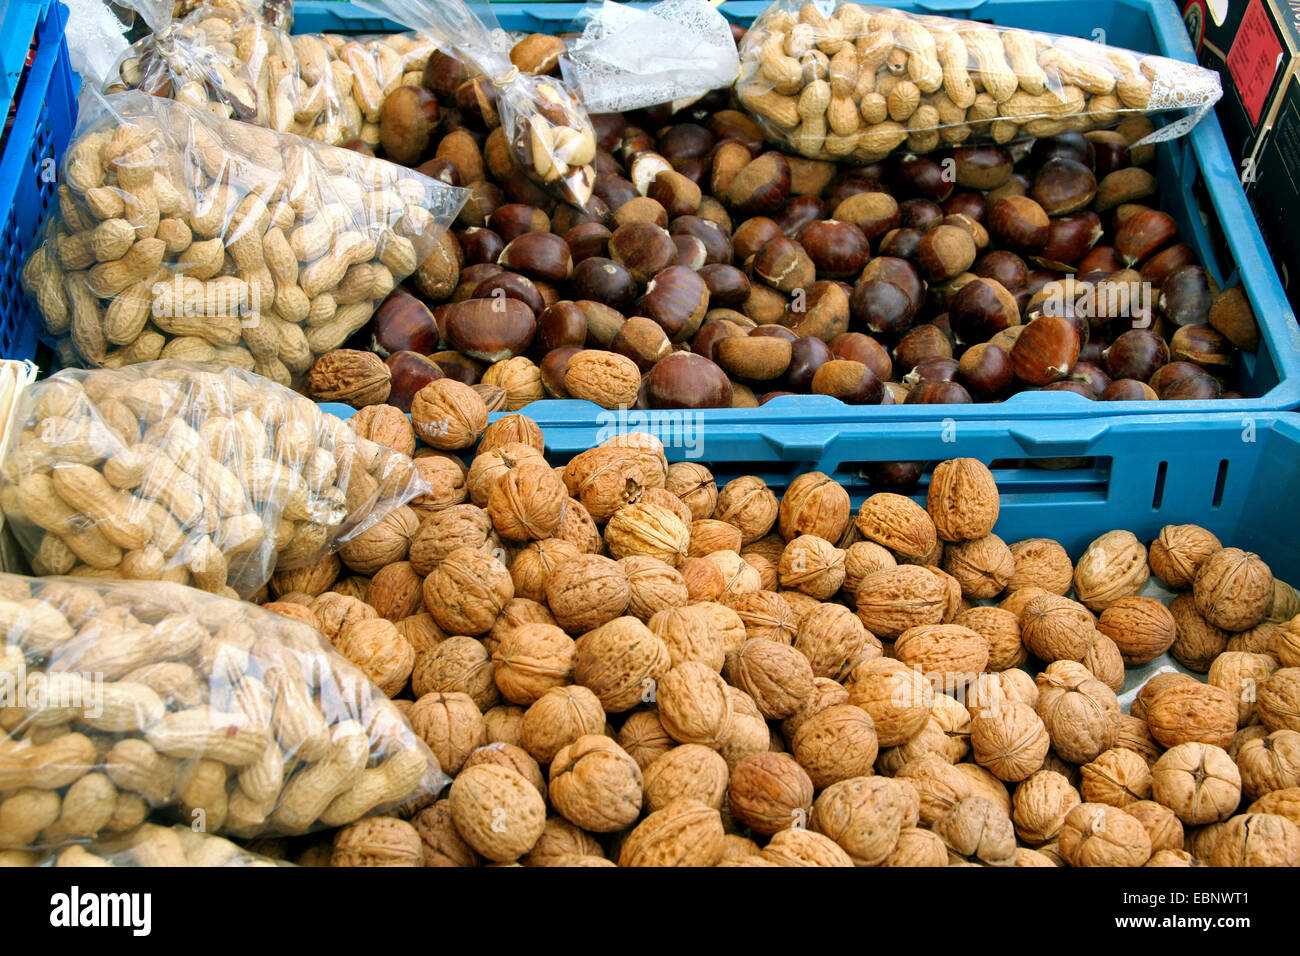 Les noix, arachides et châtaignes dans un marché, Allemagne Banque D'Images